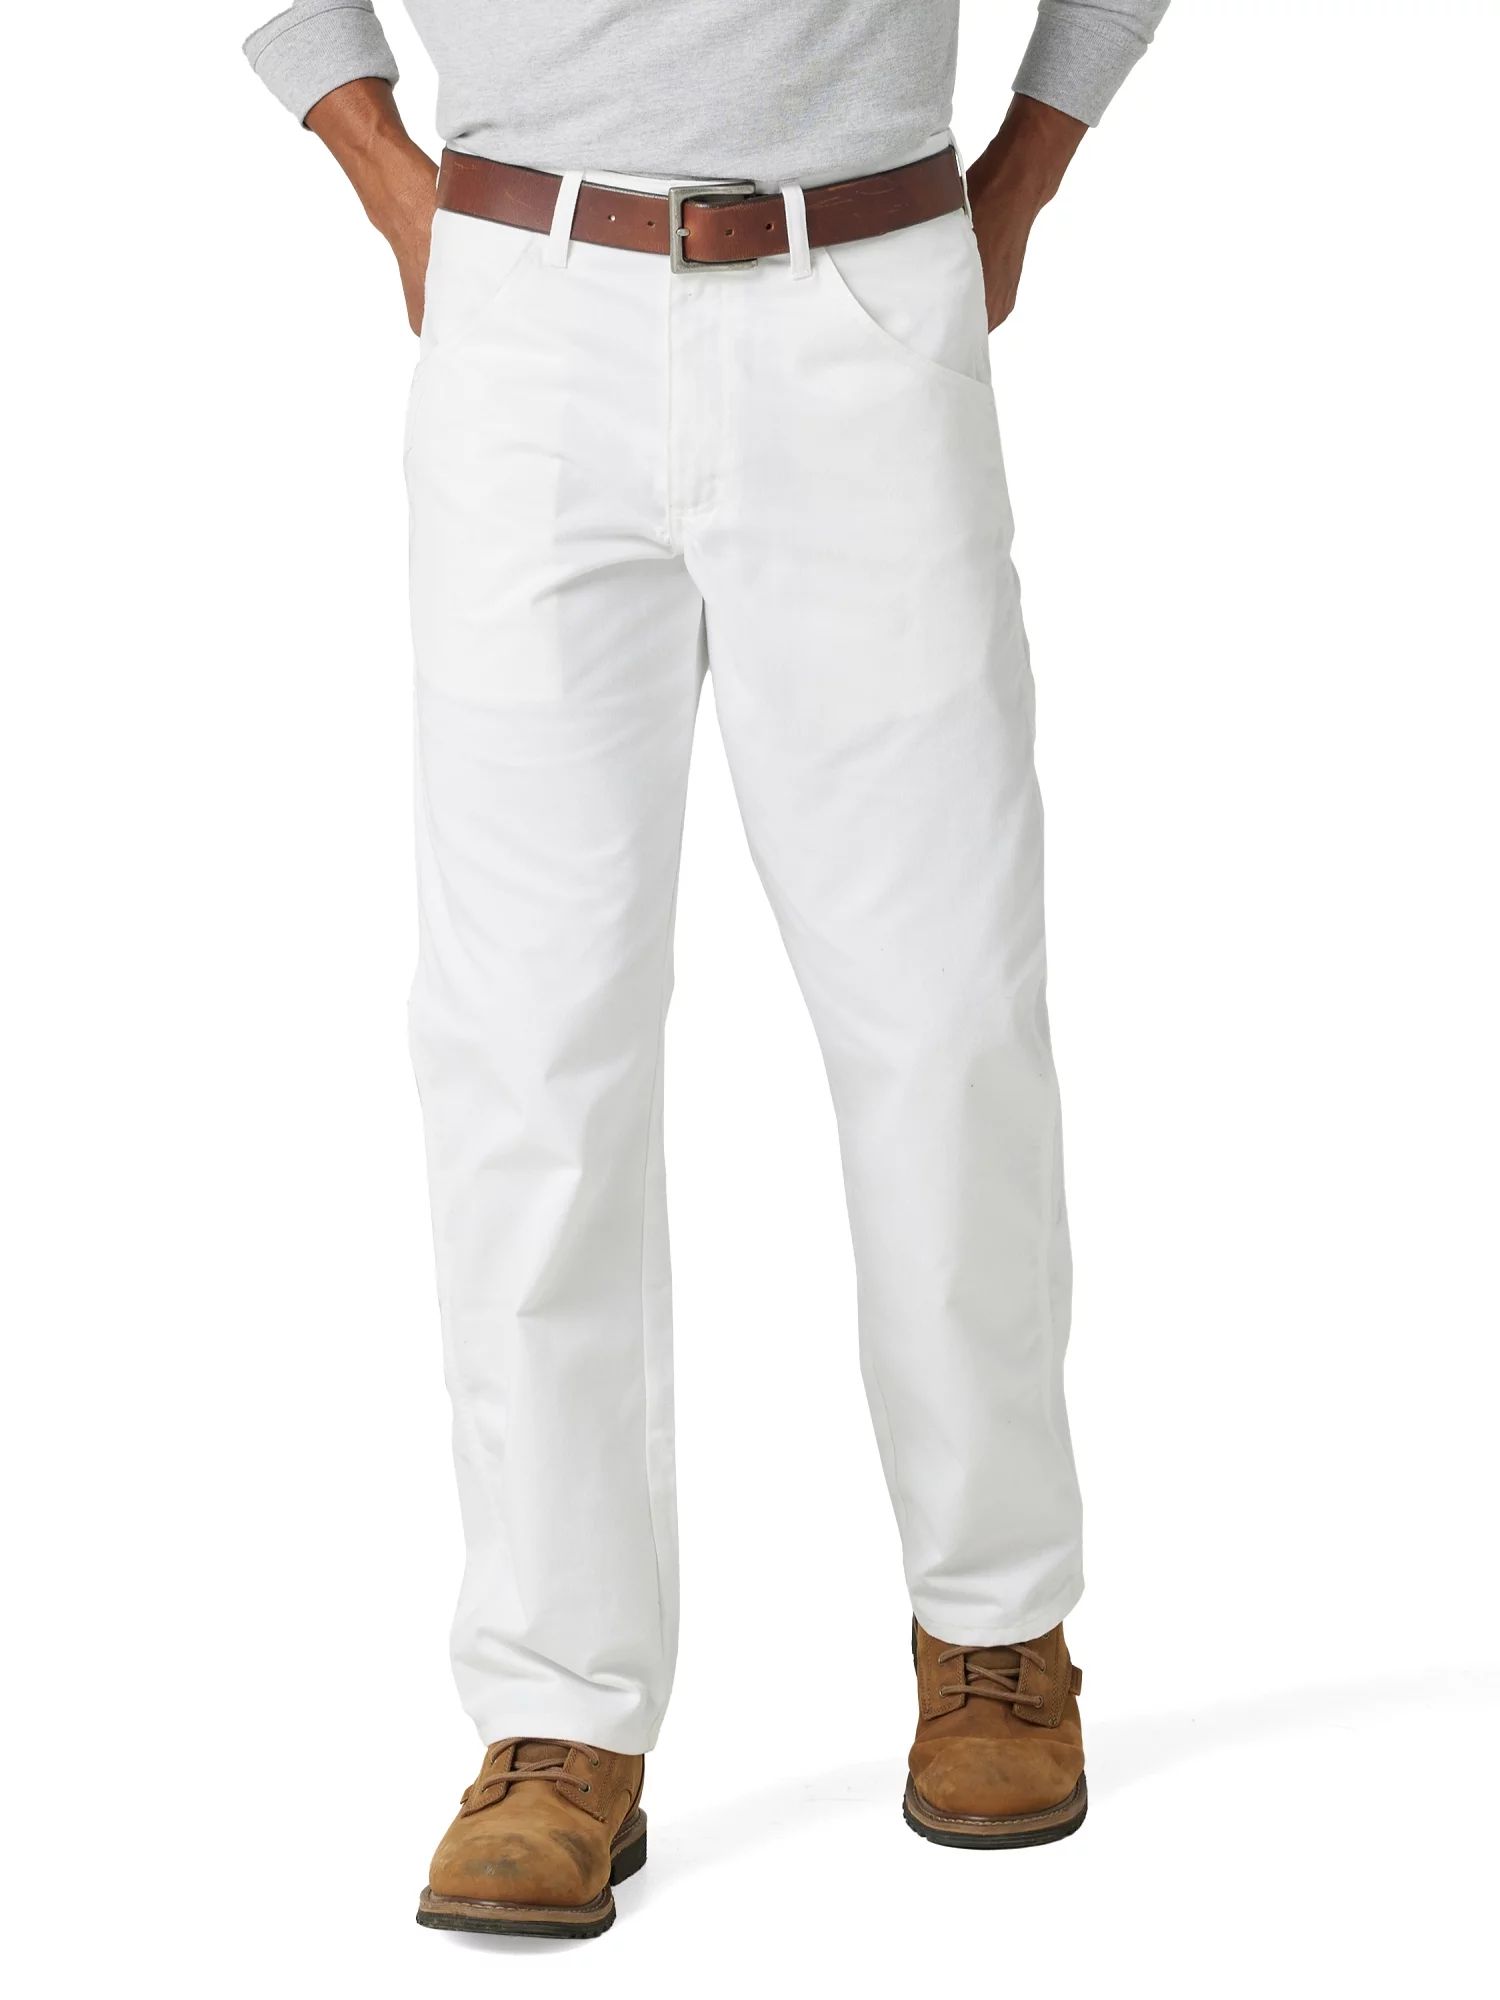 Men's Wrangler Workwear Painter Pant, Sizes 32-44 | Walmart (US)